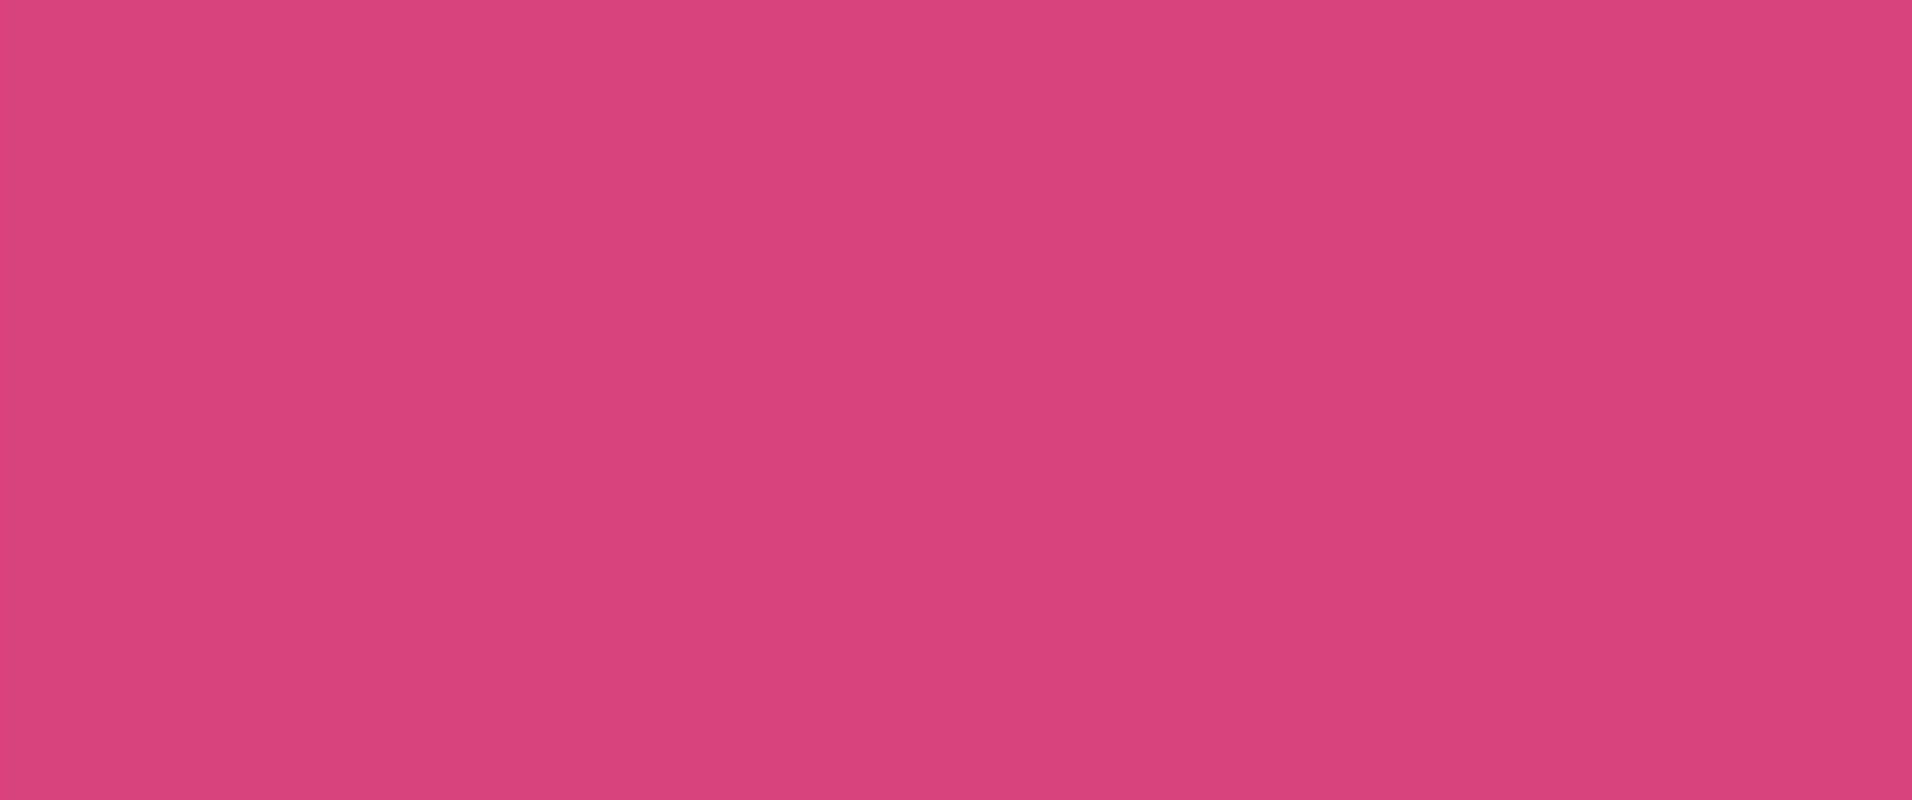 Textil Marker - medium 2-4 mm, pink